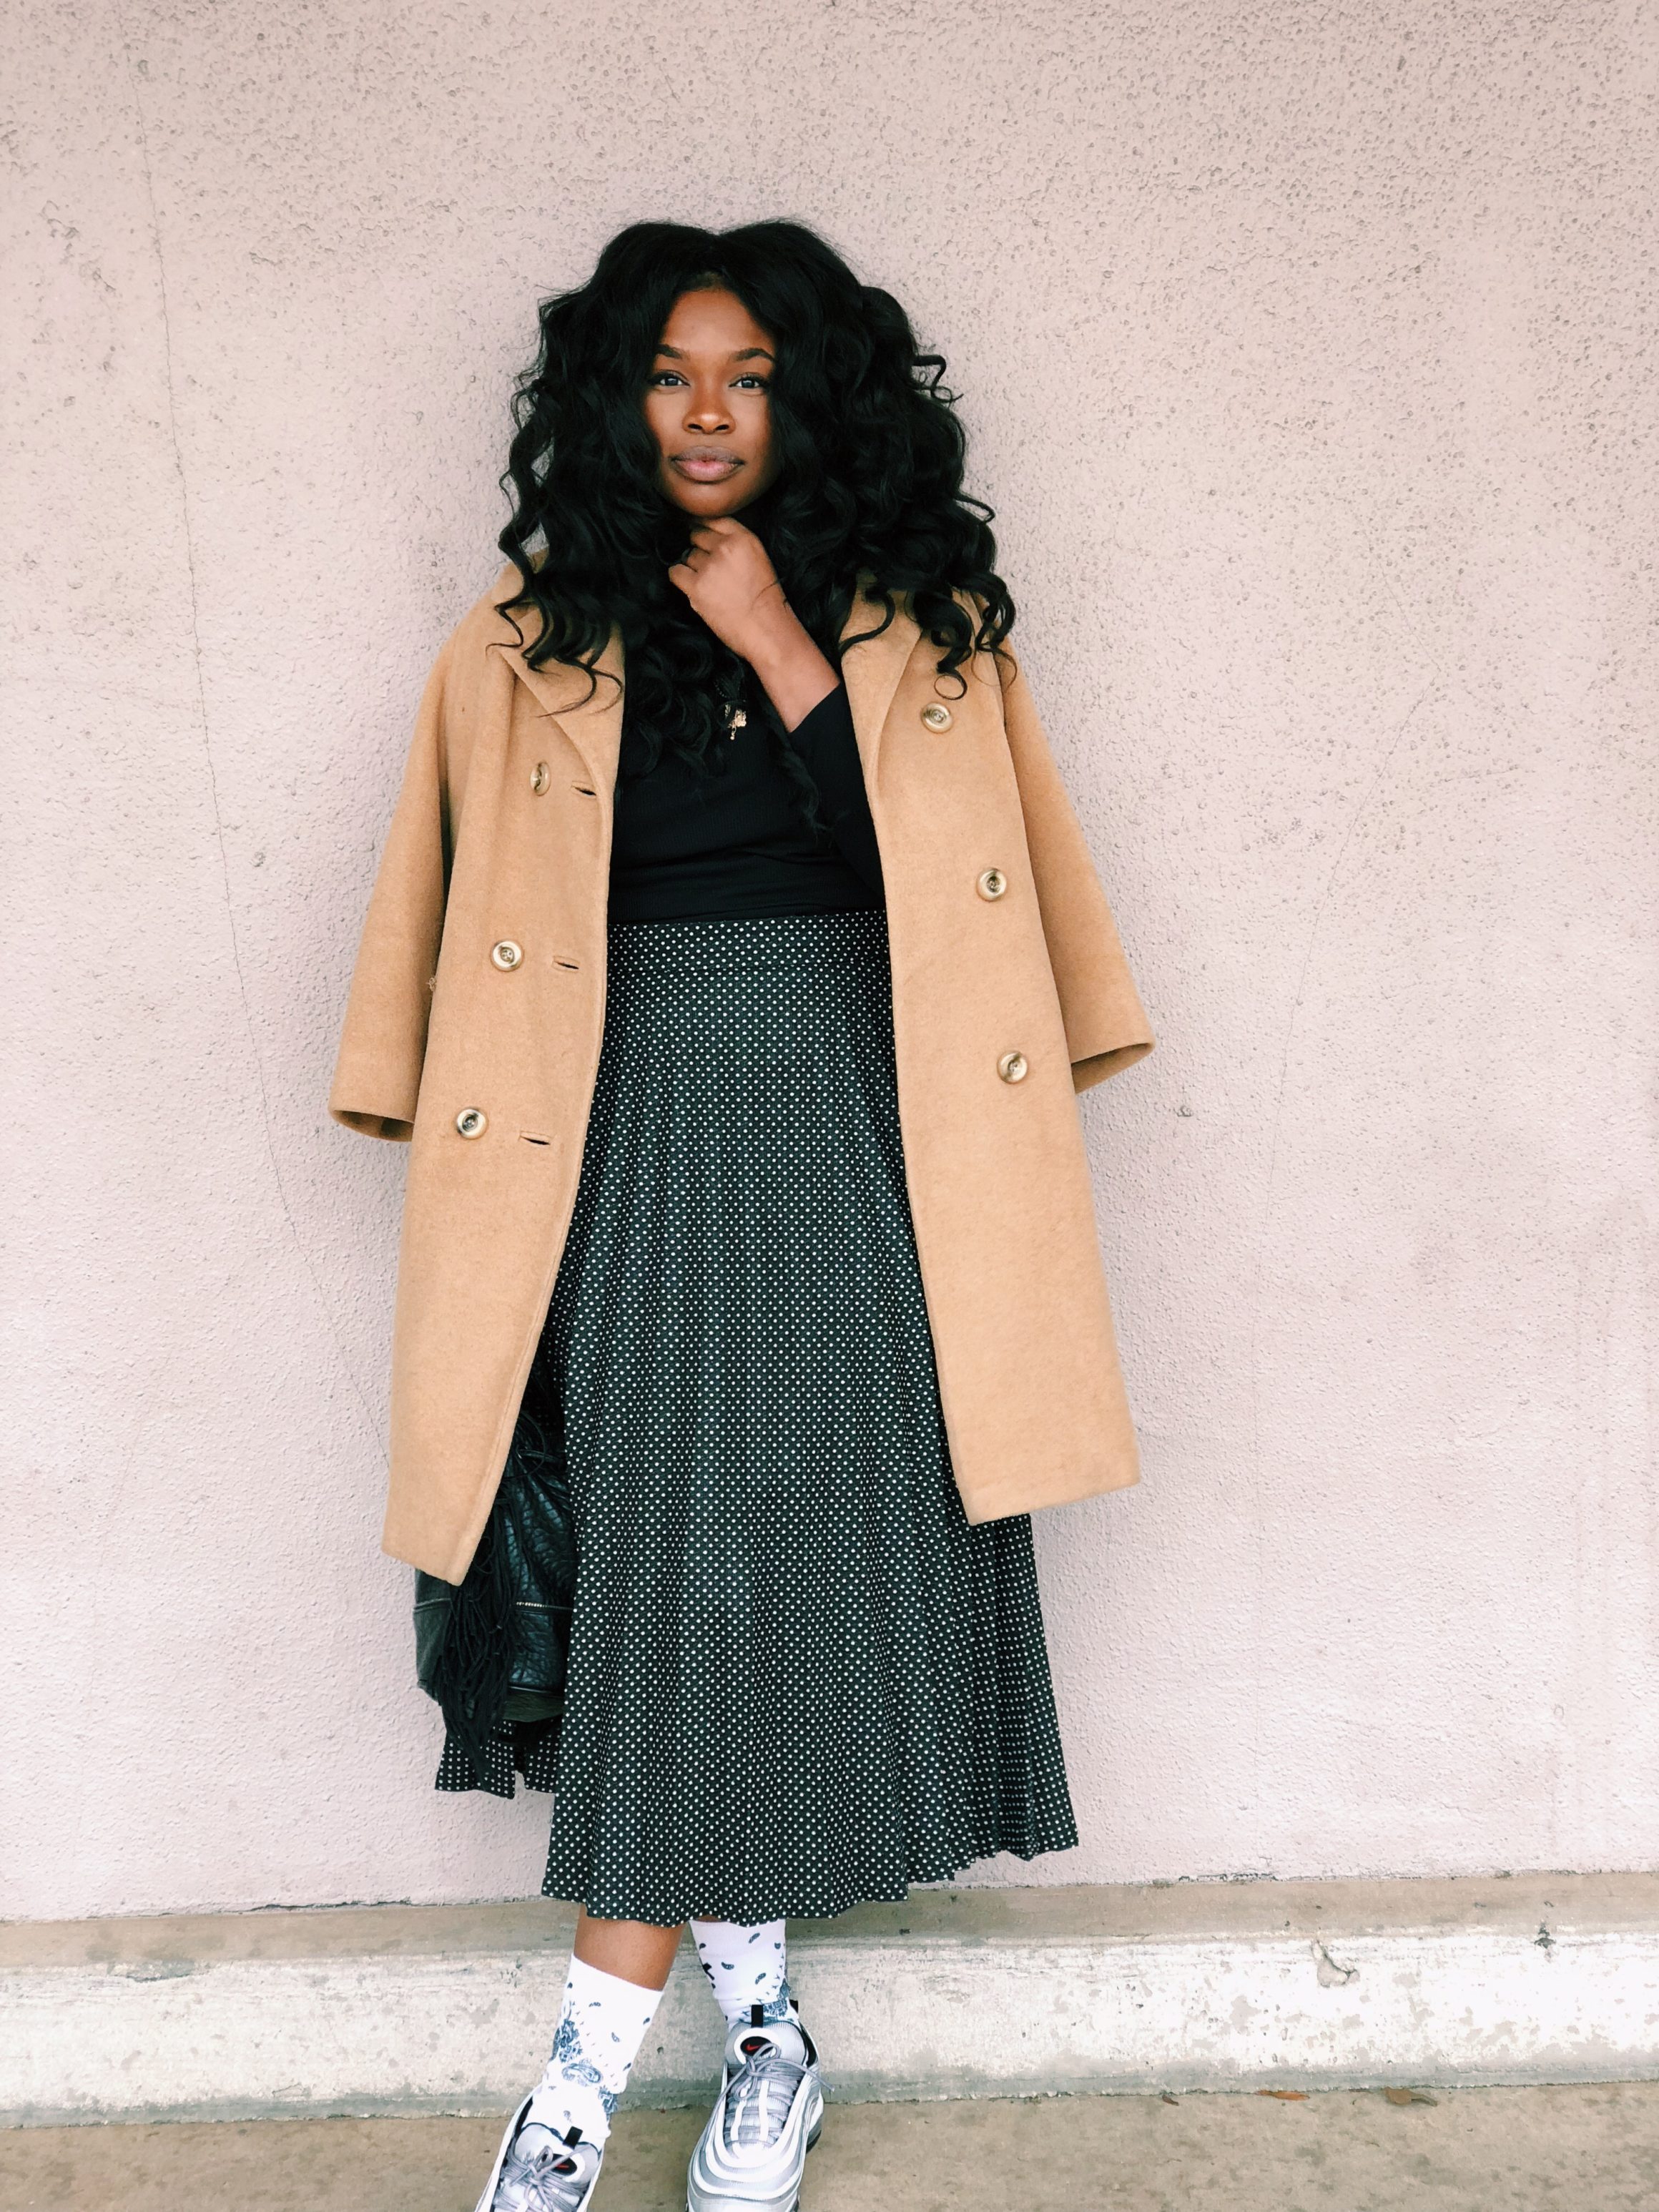 Fashion Bombshell of the Day: Iyonna from Atlanta – Fashion Bomb Daily ...